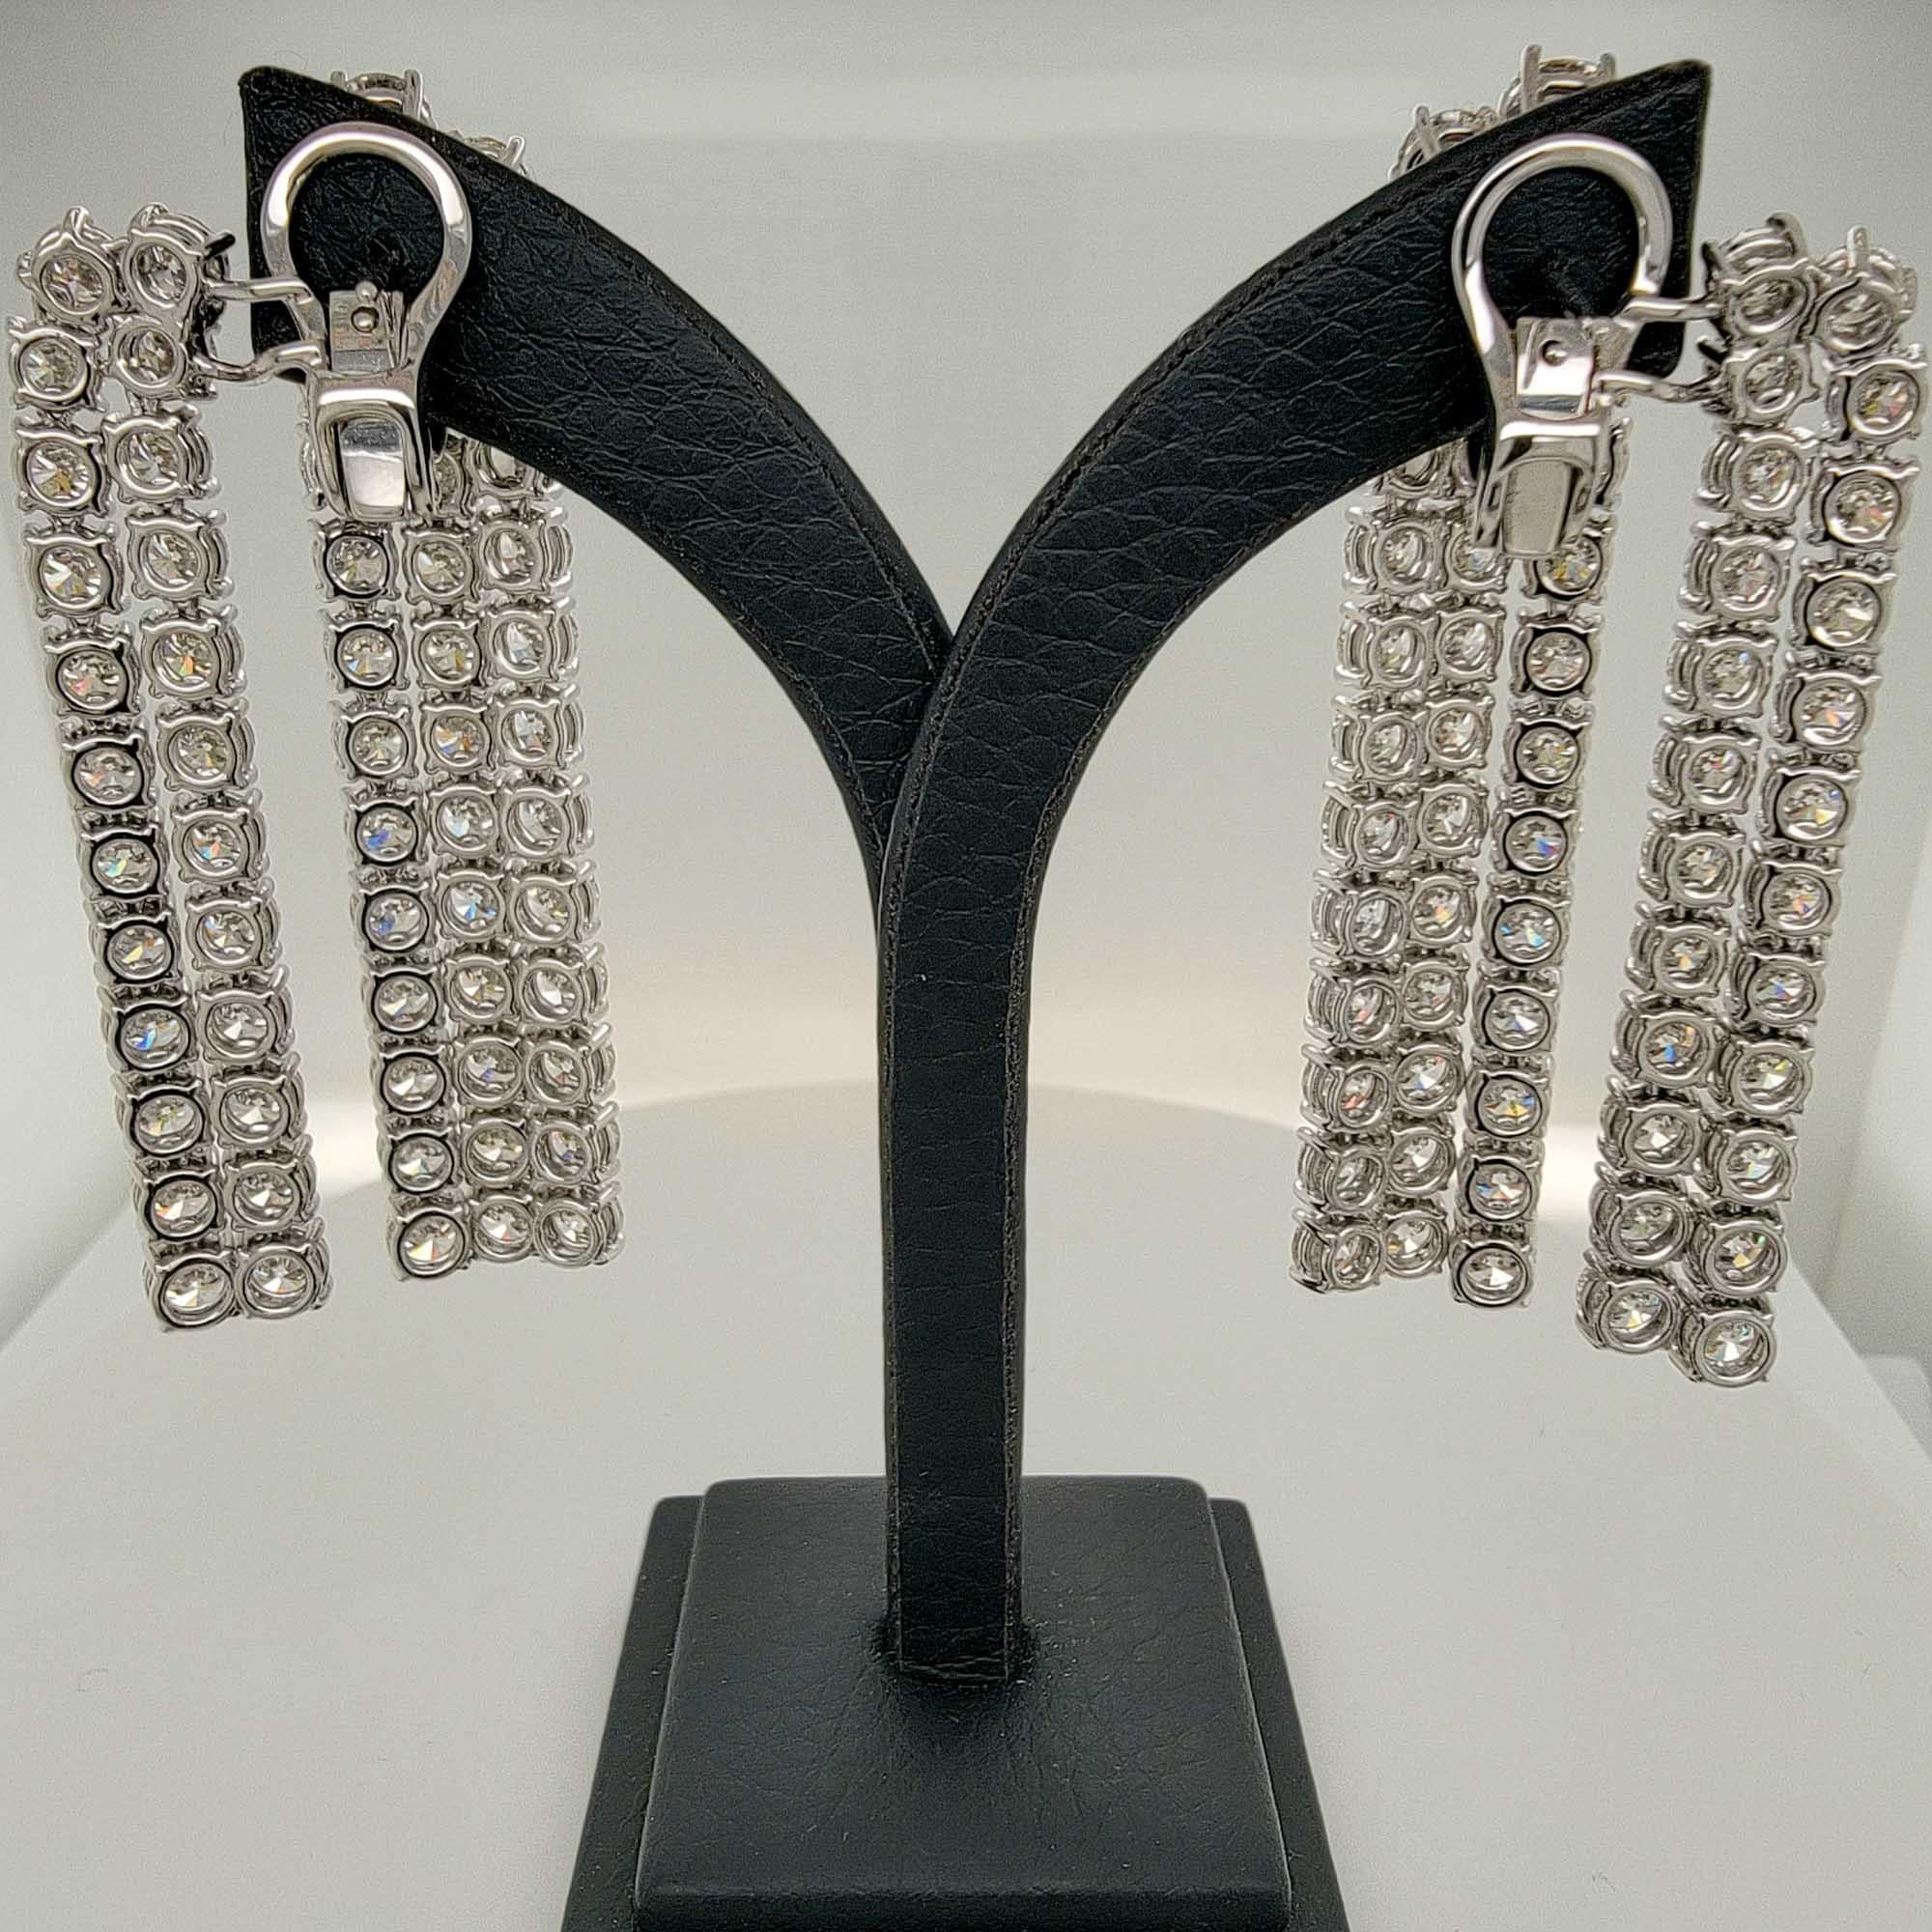 Boucles d'oreilles pendantes en diamant par Sophia D en monture platine avec des diamants ronds pesant un total de 29,88 carats.

La longueur des boucles d'oreilles est d'environ 2,3